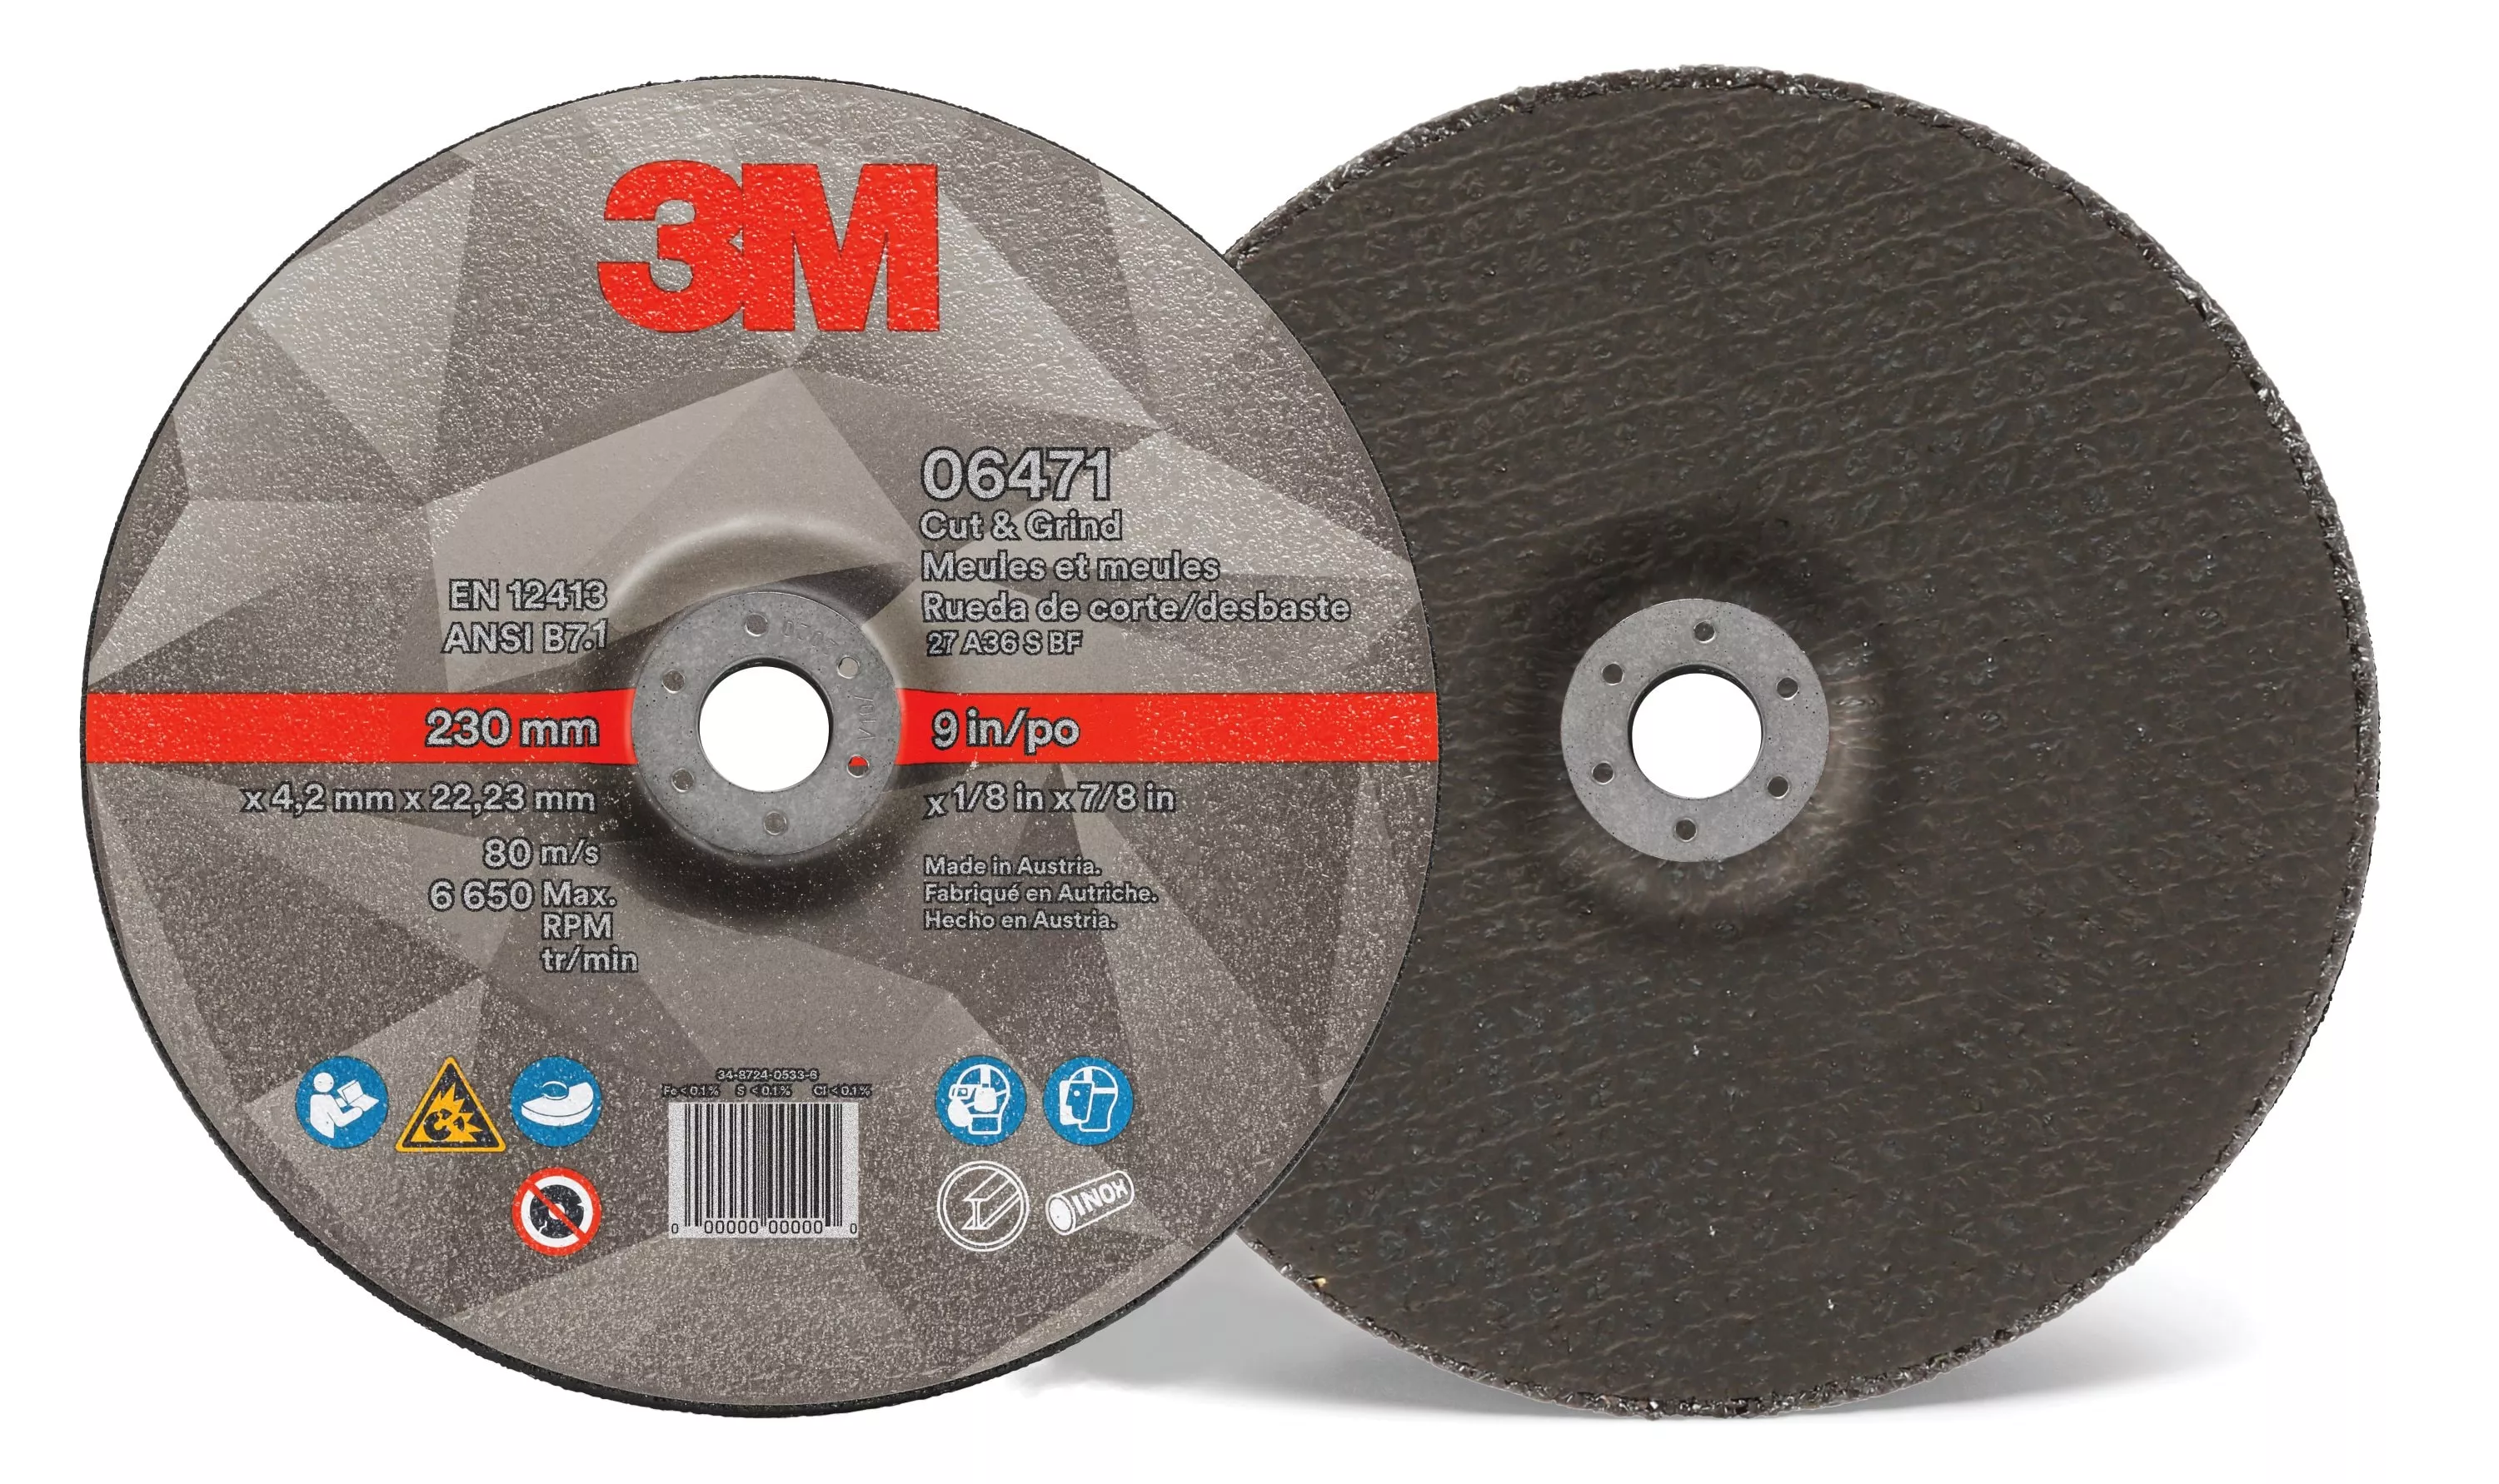 3M™ Cut & Grind Wheel, 06471, T27, 9 in x 1/8 in x 7/8 in, 10/Carton, 20
ea/Case